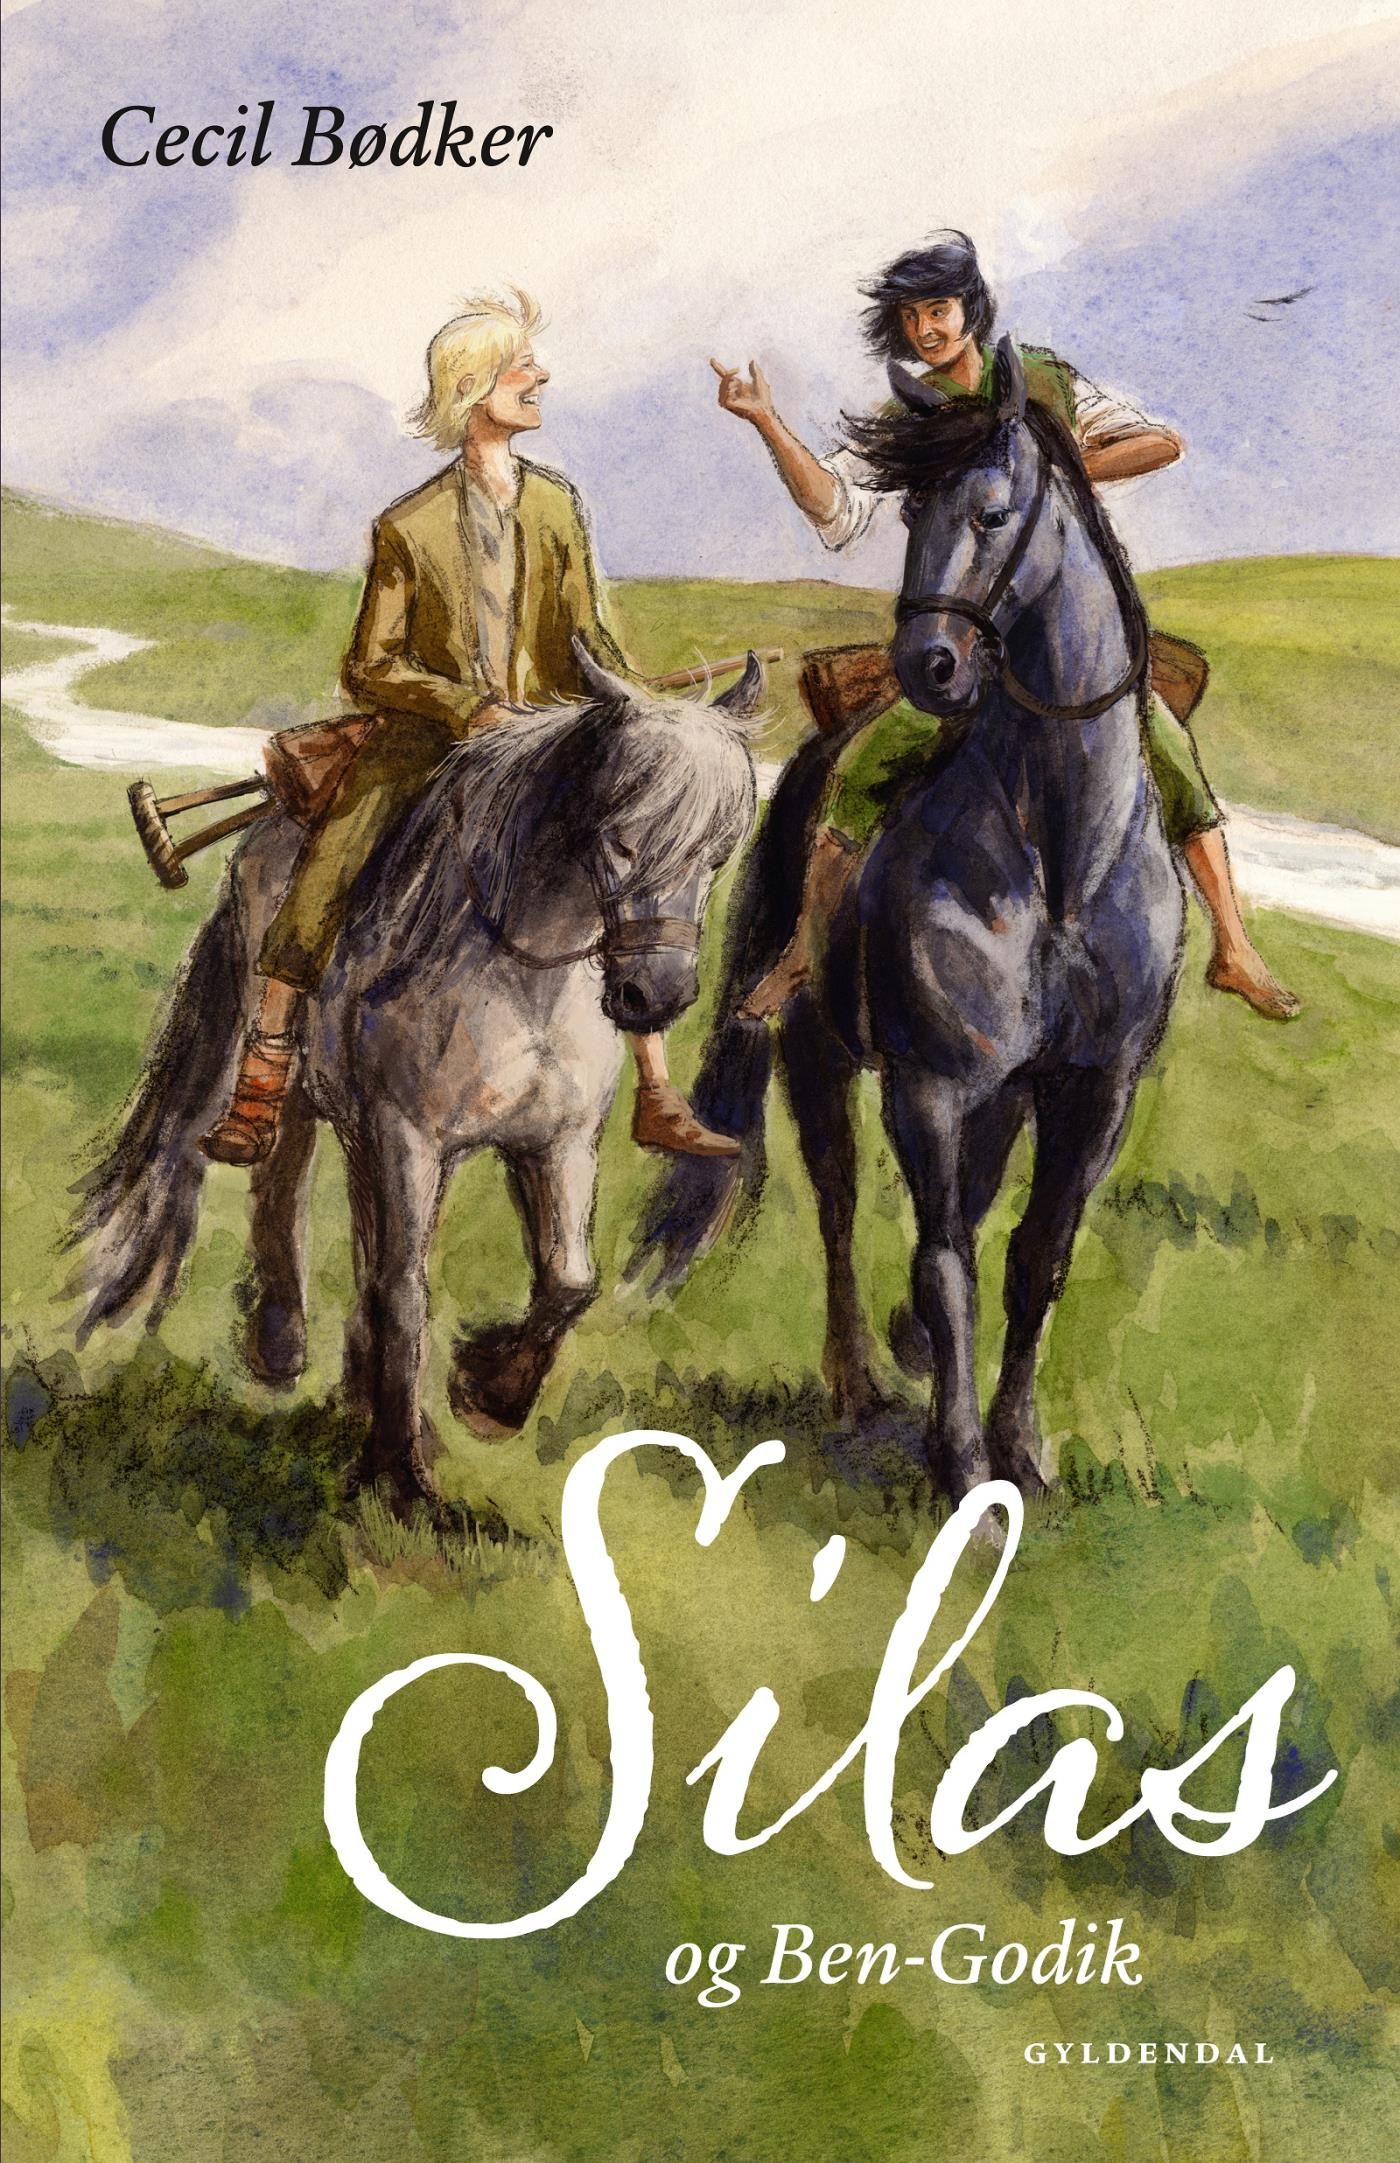 Silas 2 - Silas og Ben-Godik, eBook by Cecil Bødker